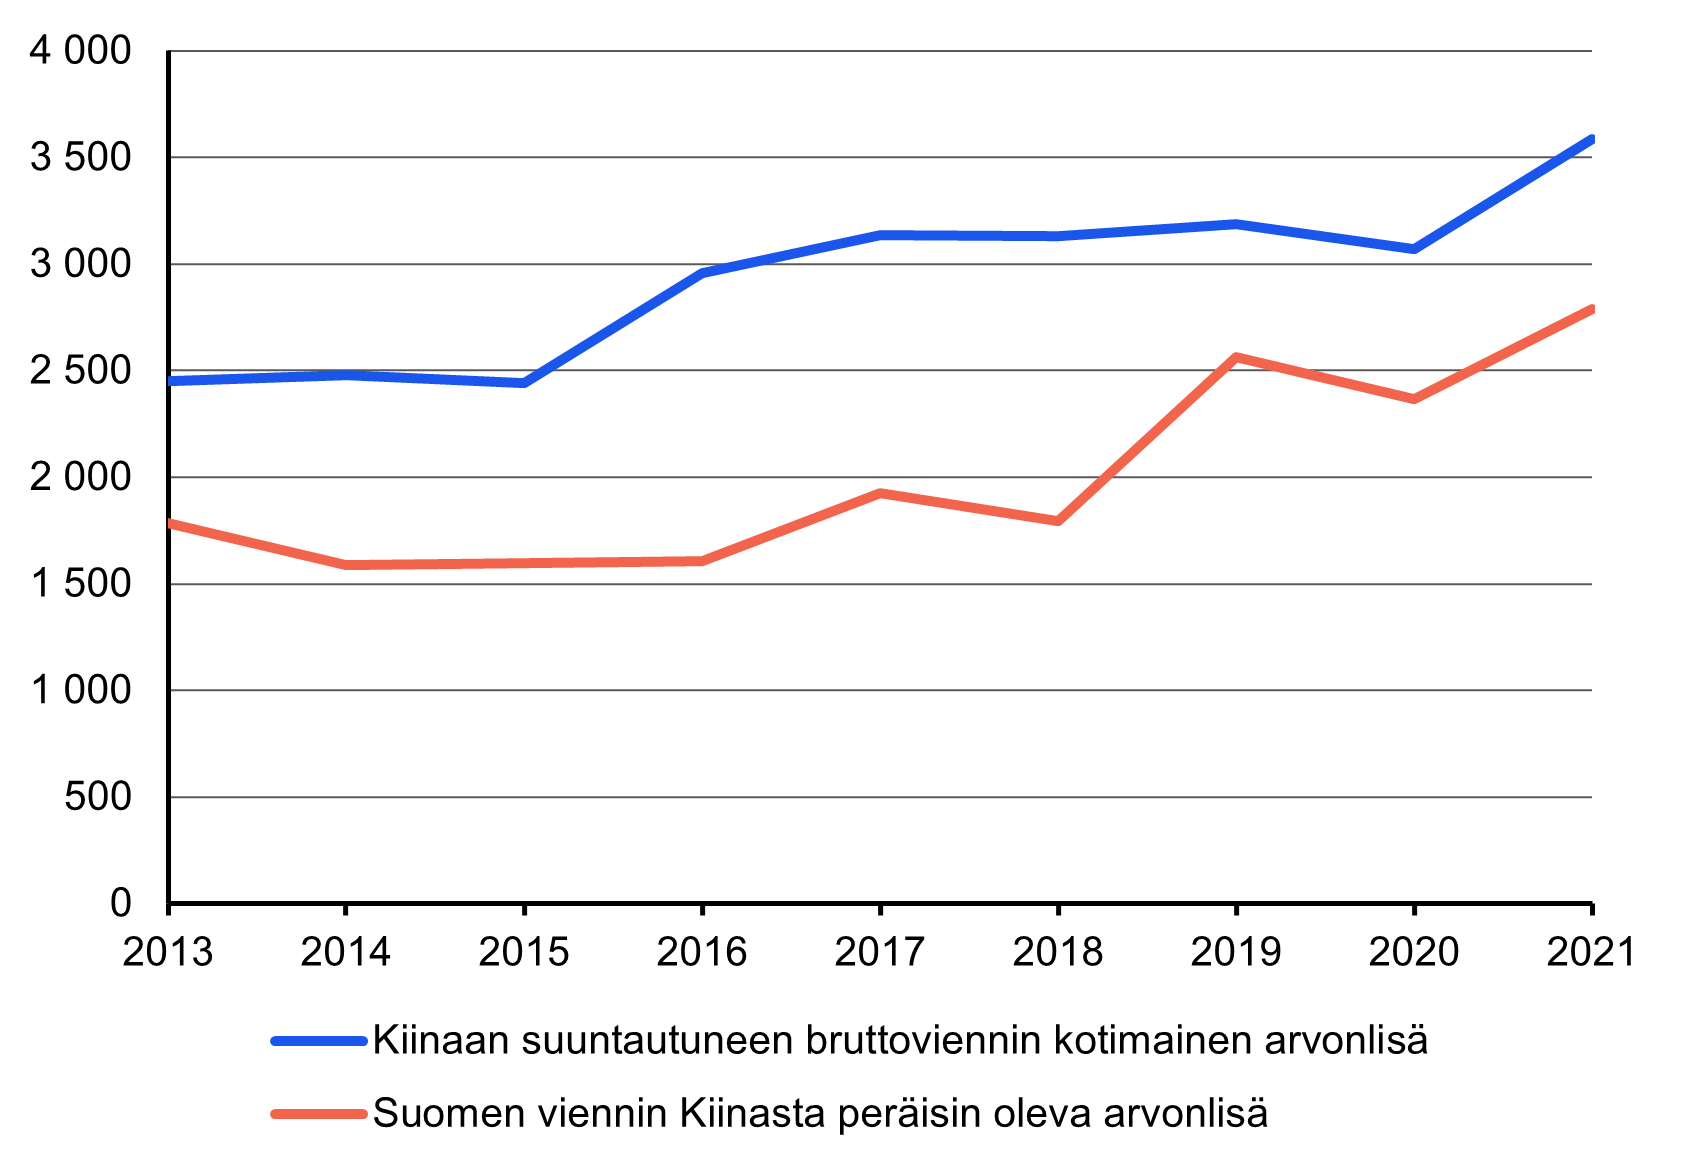 Kuvio 3 esittää ajanjaksolla 2013 - 2021 kotimaisen arvonlisän viennin Kiinan sekä Kiinasta peräisin oleva arvonlisä Suomen viennissä. Vuodesta 2013 vuoteen 2021 molempien euromääräinen arvo on kasvanut ja on vuonna 2021 korkeimmillaan koko tarkasteluajanjaksolla.